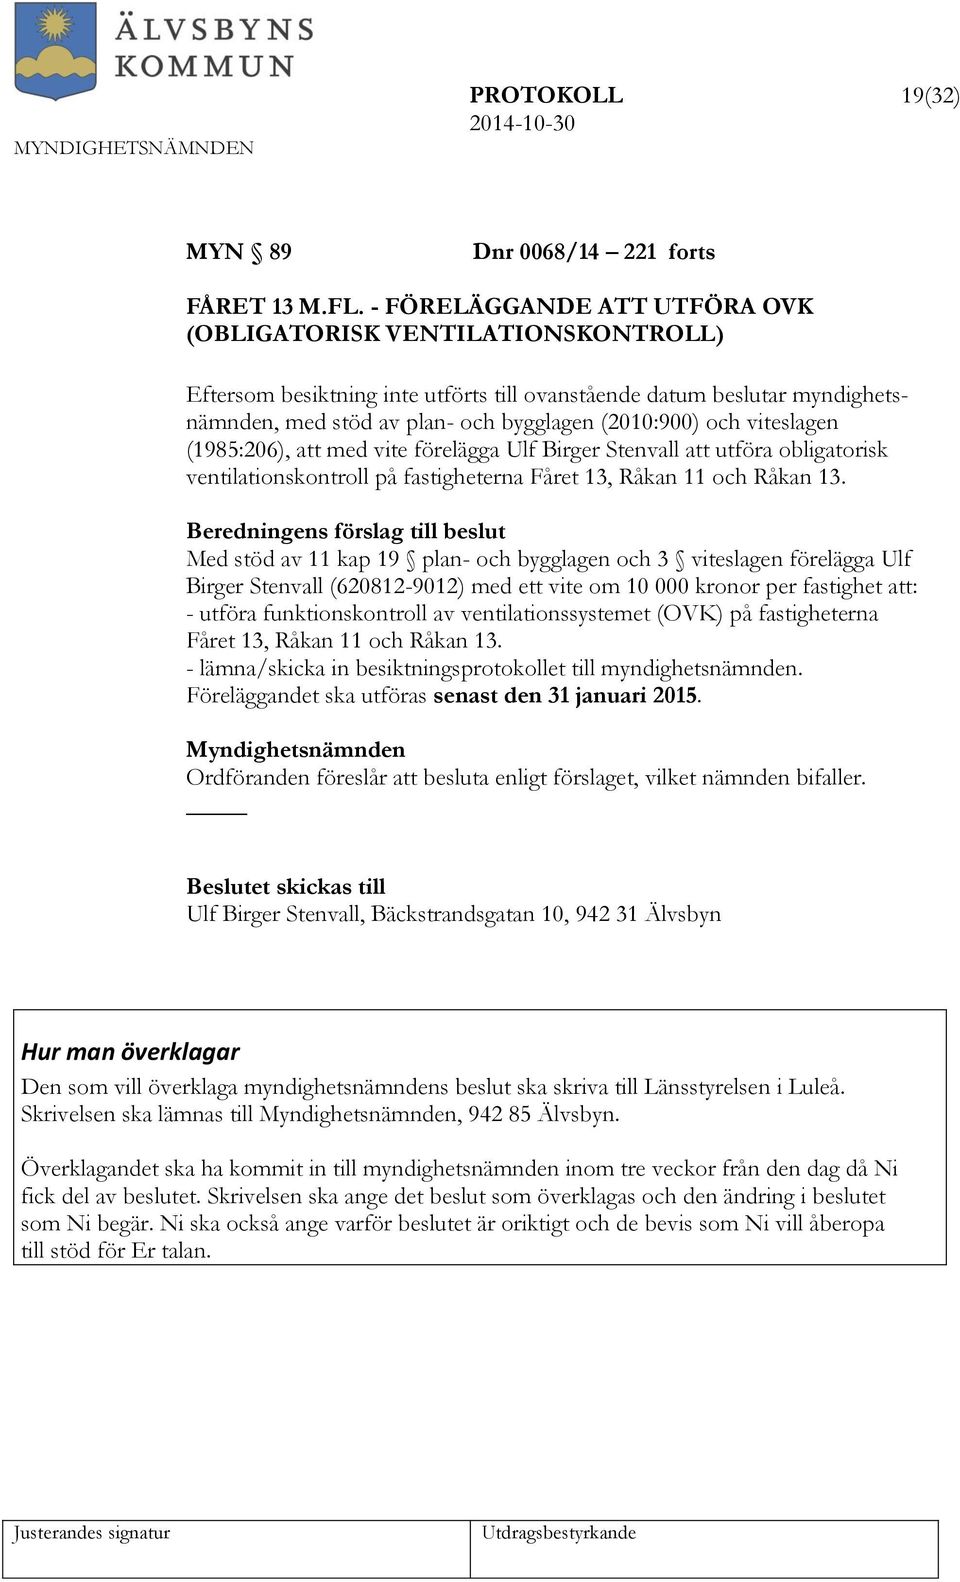 viteslagen (1985:206), att med vite förelägga Ulf Birger Stenvall att utföra obligatorisk ventilationskontroll på fastigheterna Fåret 13, Råkan 11 och Råkan 13.